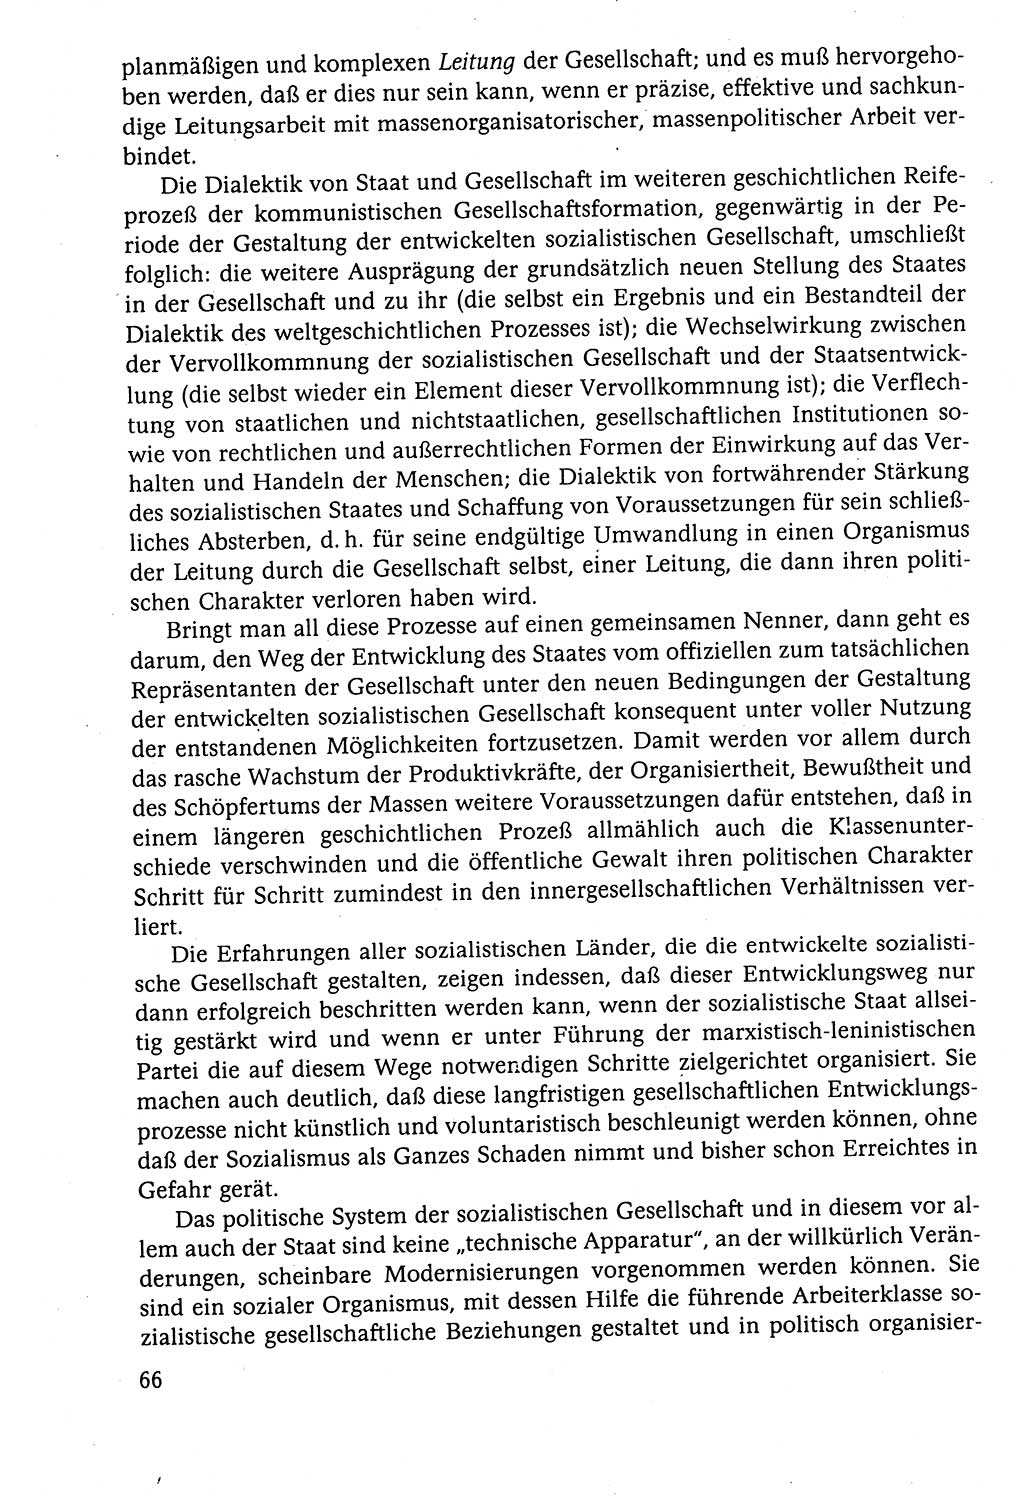 Der Staat im politischen System der DDR (Deutsche Demokratische Republik) 1986, Seite 66 (St. pol. Sys. DDR 1986, S. 66)